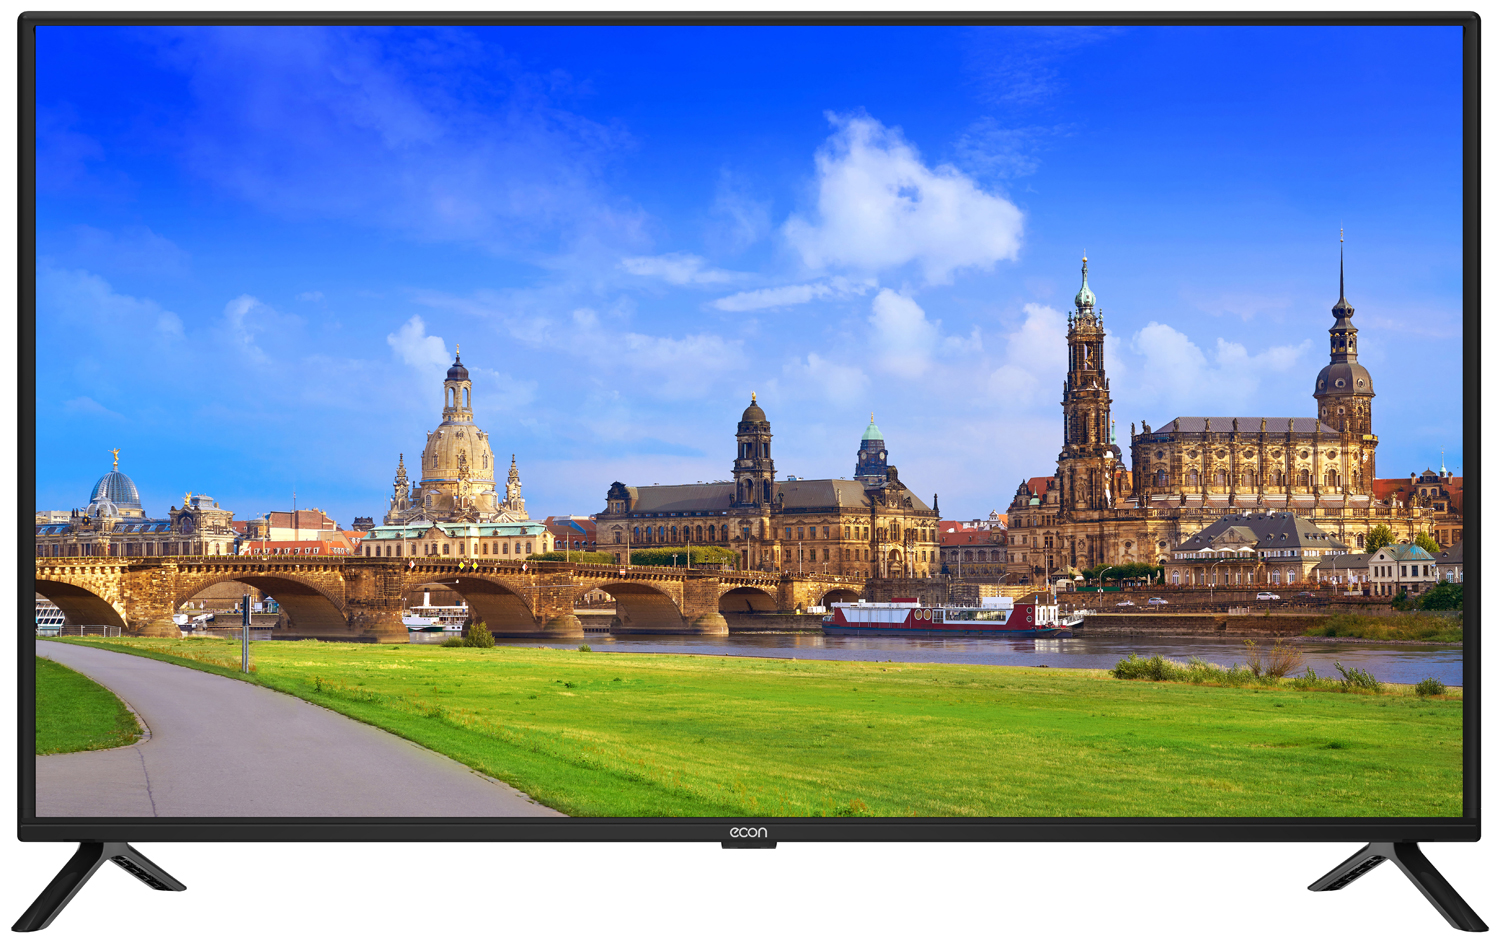 Картинка Smart телевизор ECON  EX-40FS003B по разумной цене купить в интернет магазине mall.su